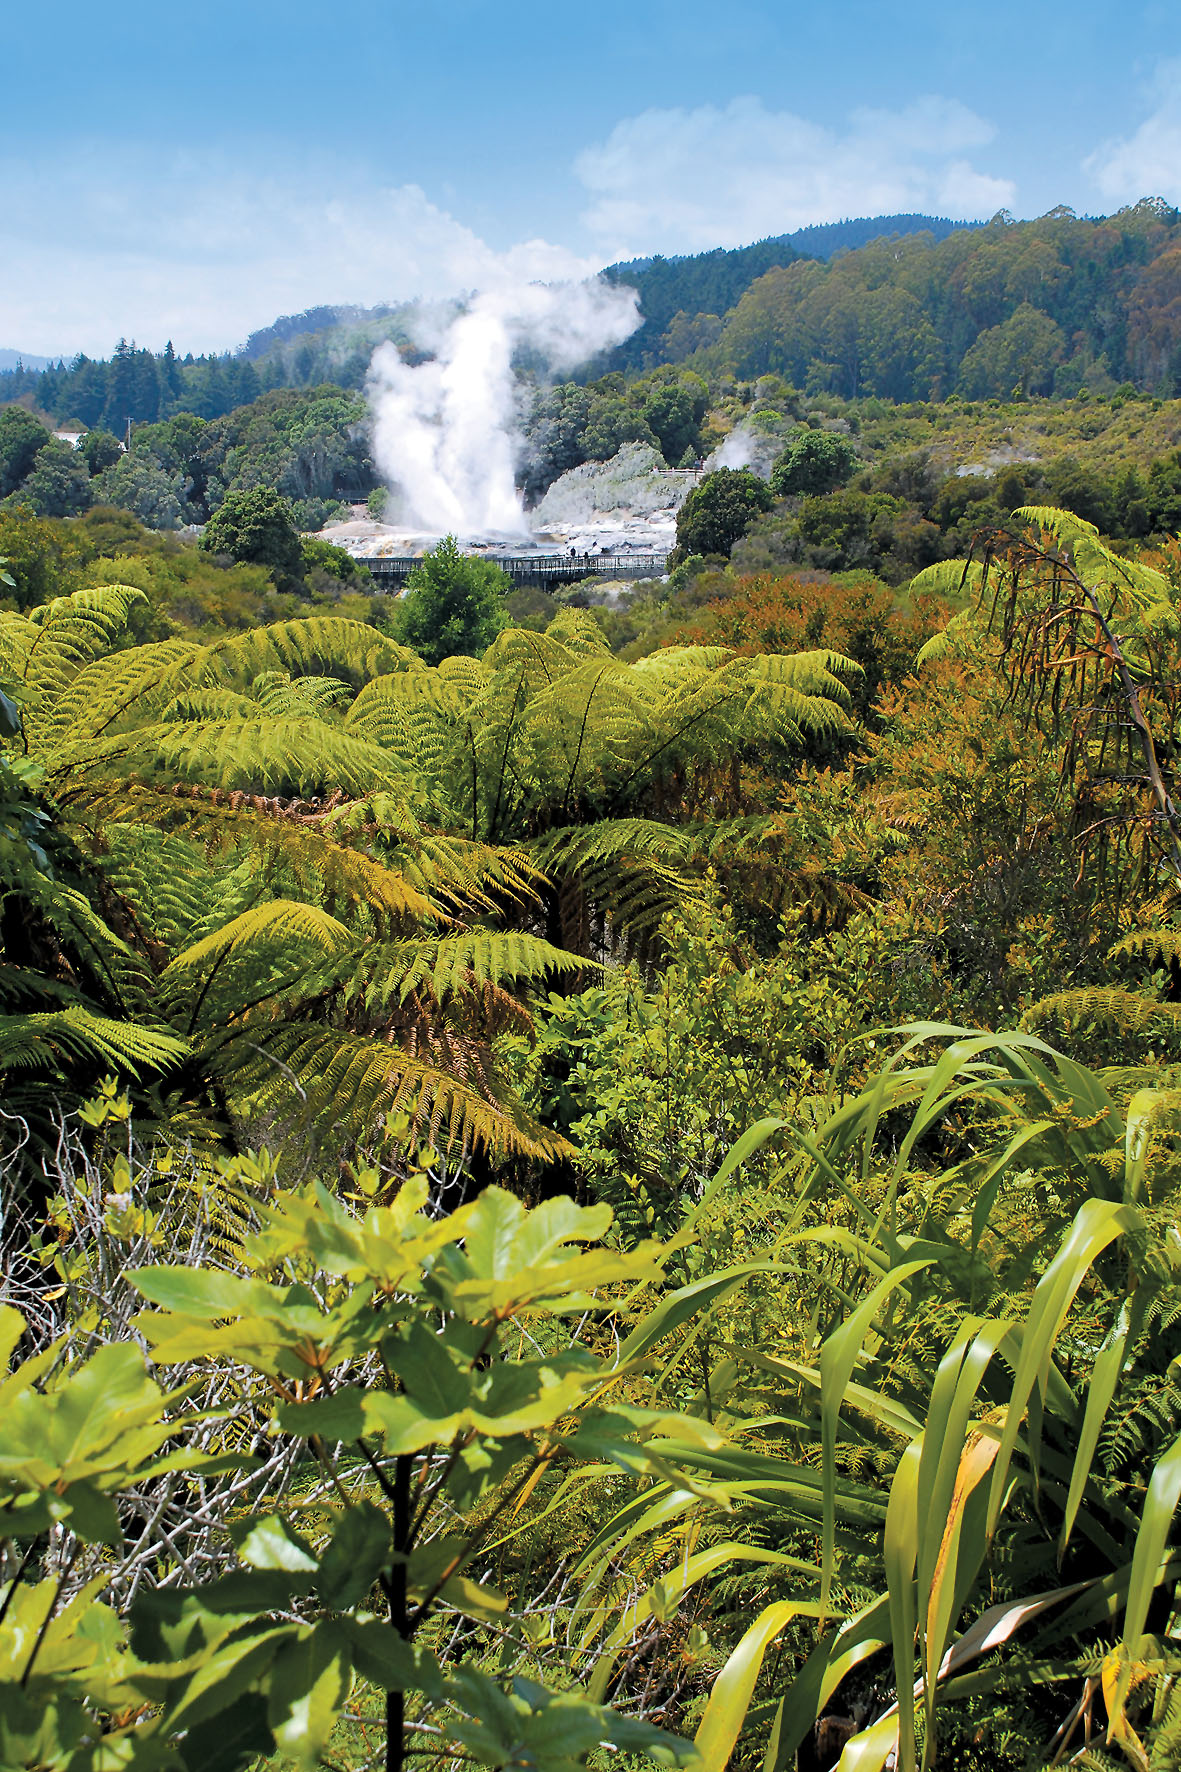 Neuseeland lockt mit blühenden Landschaften und gewaltigen Naturschauspielen.